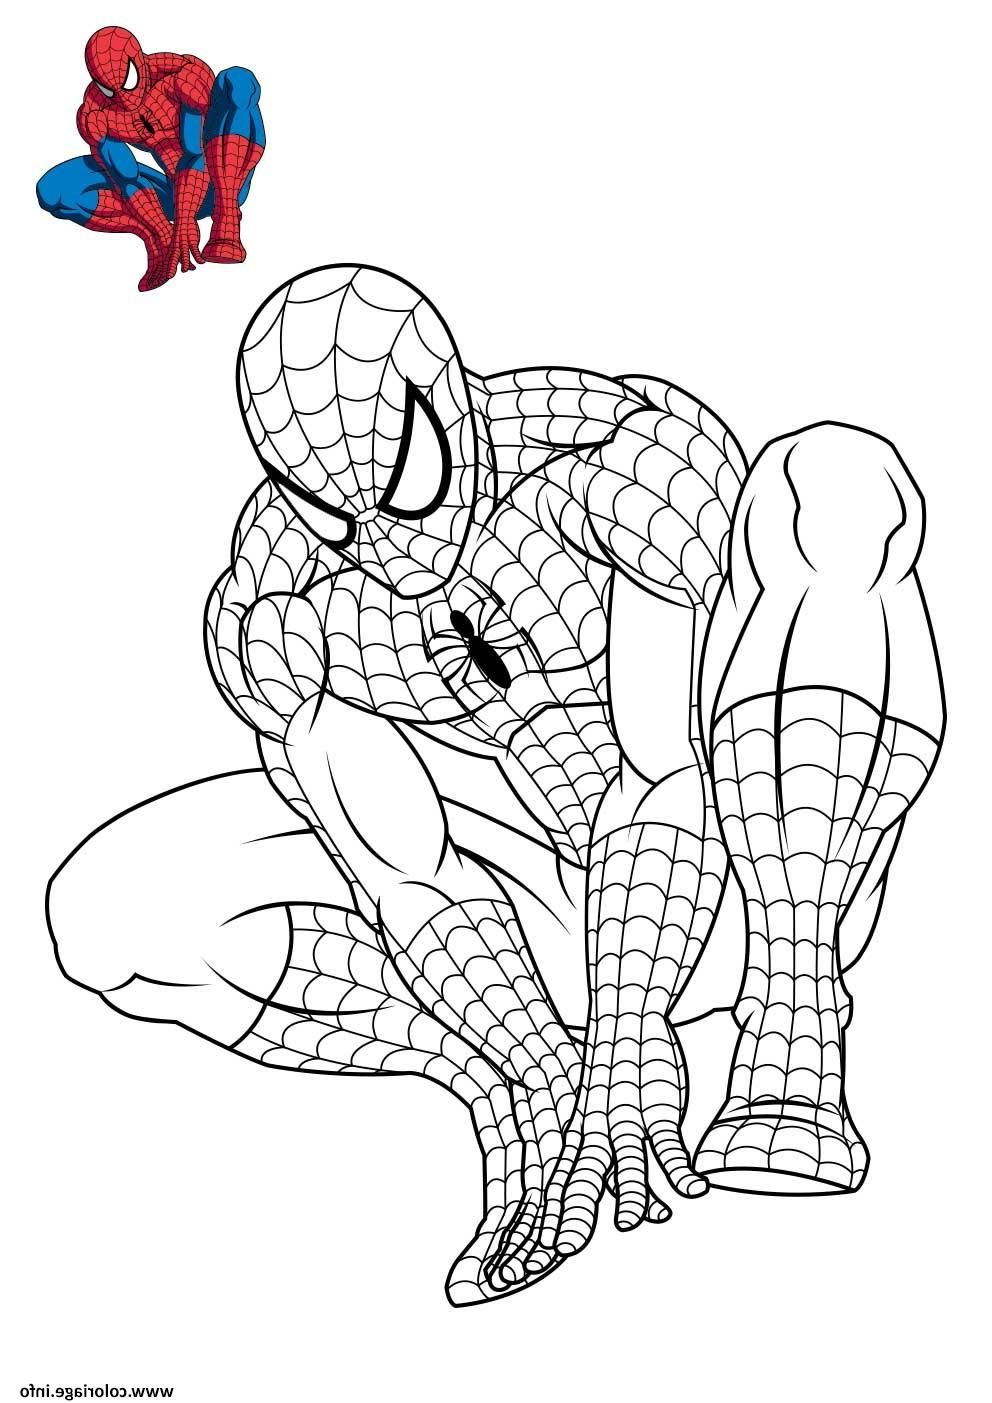 Dessin Spiderman Facile Cool Stock Coloriage Spiderman 3 En Reflexion